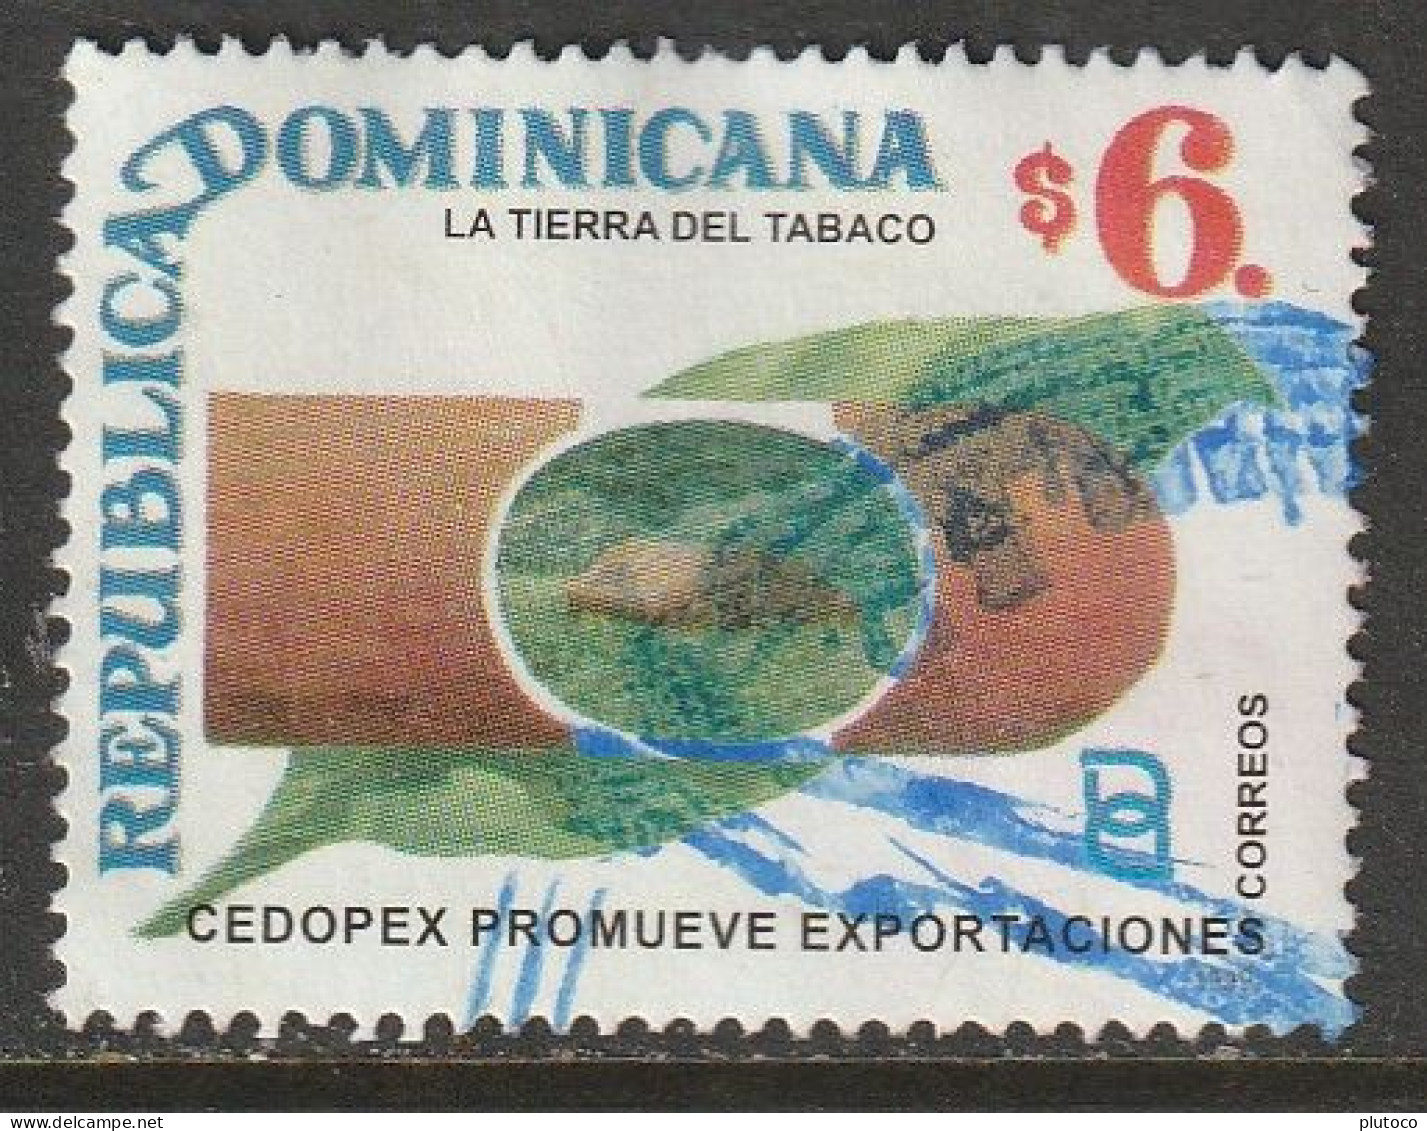 REPÚBLICA DOMINICANA, USED STAMP, OBLITERÉ, SELLO USADO - Dominicaine (République)